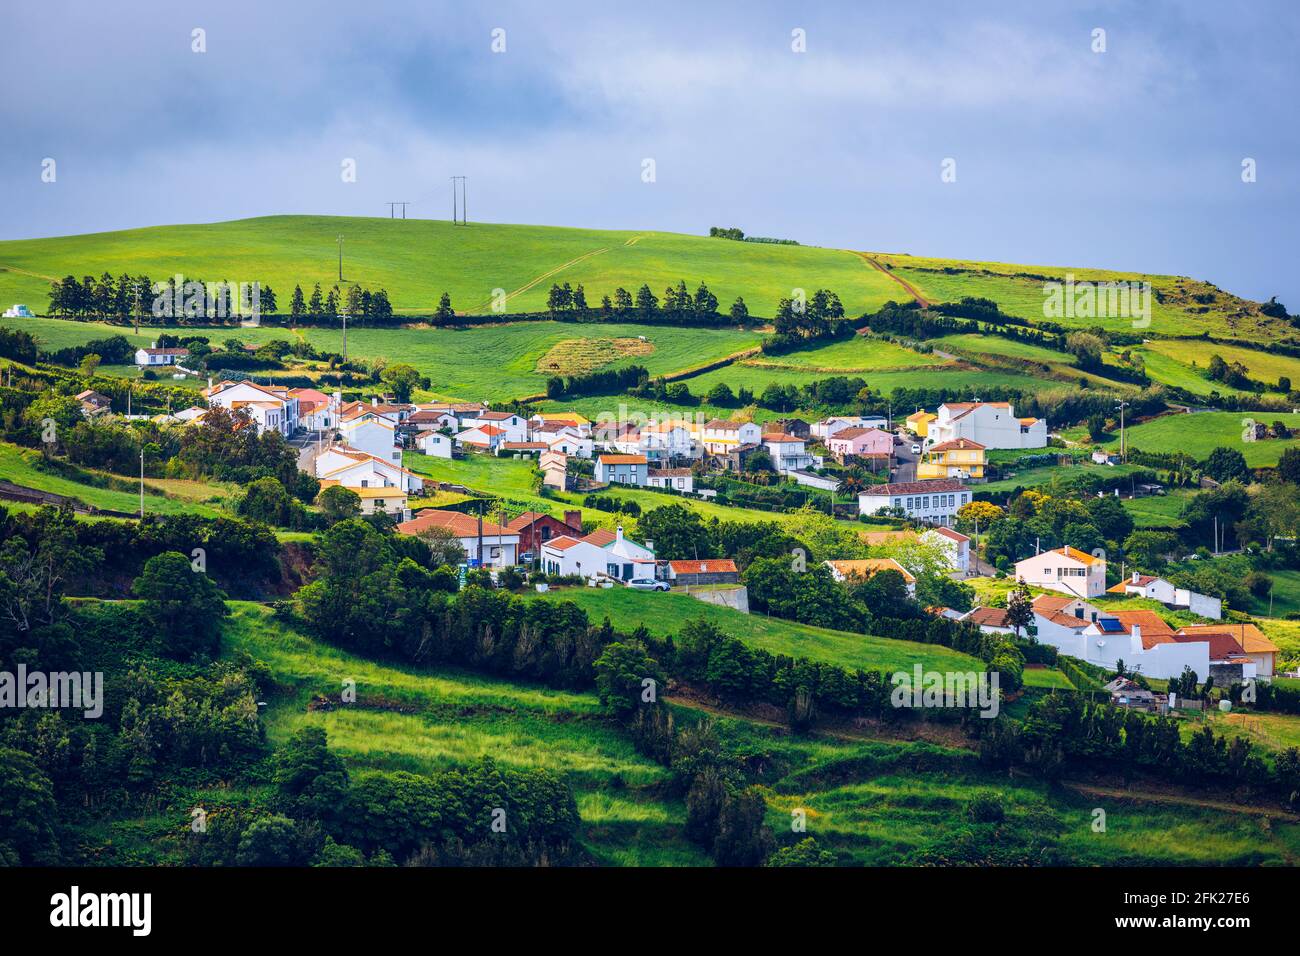 Vista del villaggio di Pedreira sulla costa nord-est dell'isola di Sao Miguel, Azzorre, Portogallo. Vista del villaggio di Pedreira e di Pico do Bartolomeu sulla costa nord-orientale Foto Stock